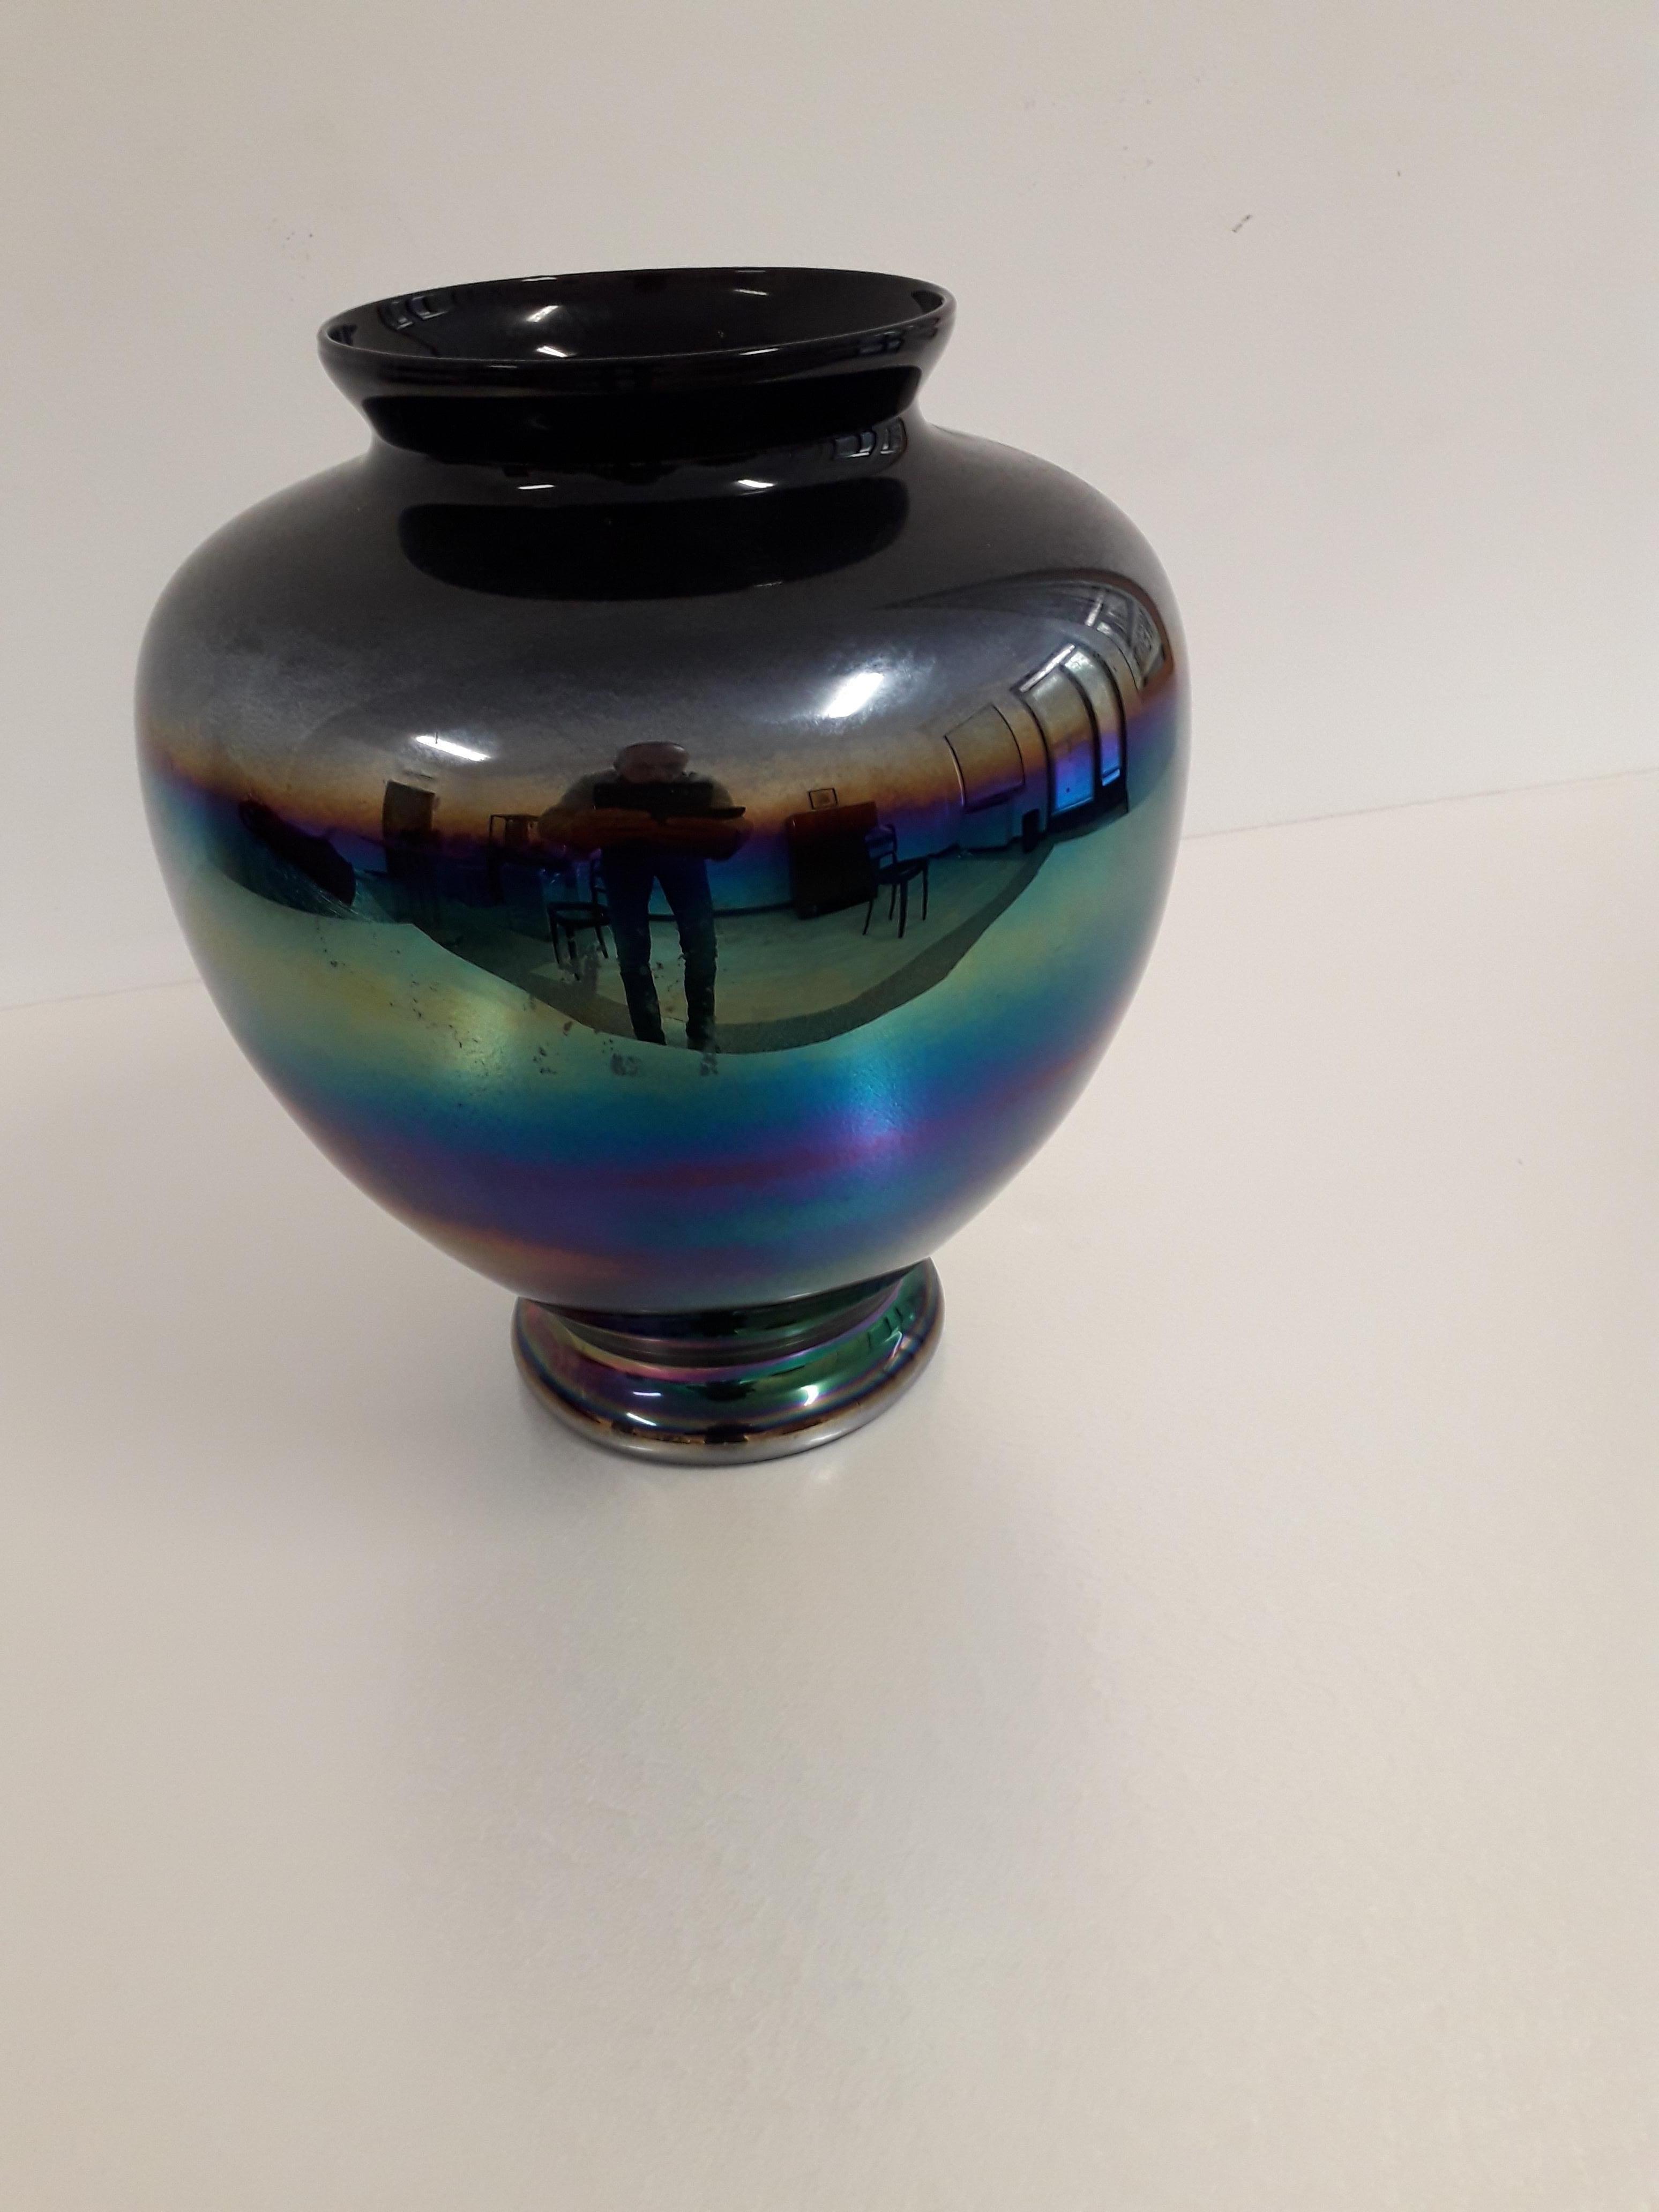 Bellissimo Vaso di Murano di Vetro eosina che da un effetto iridescente
rappresentando i colori dell'iride e riflessi mobili e cangianti.
In perfette condizioni!!